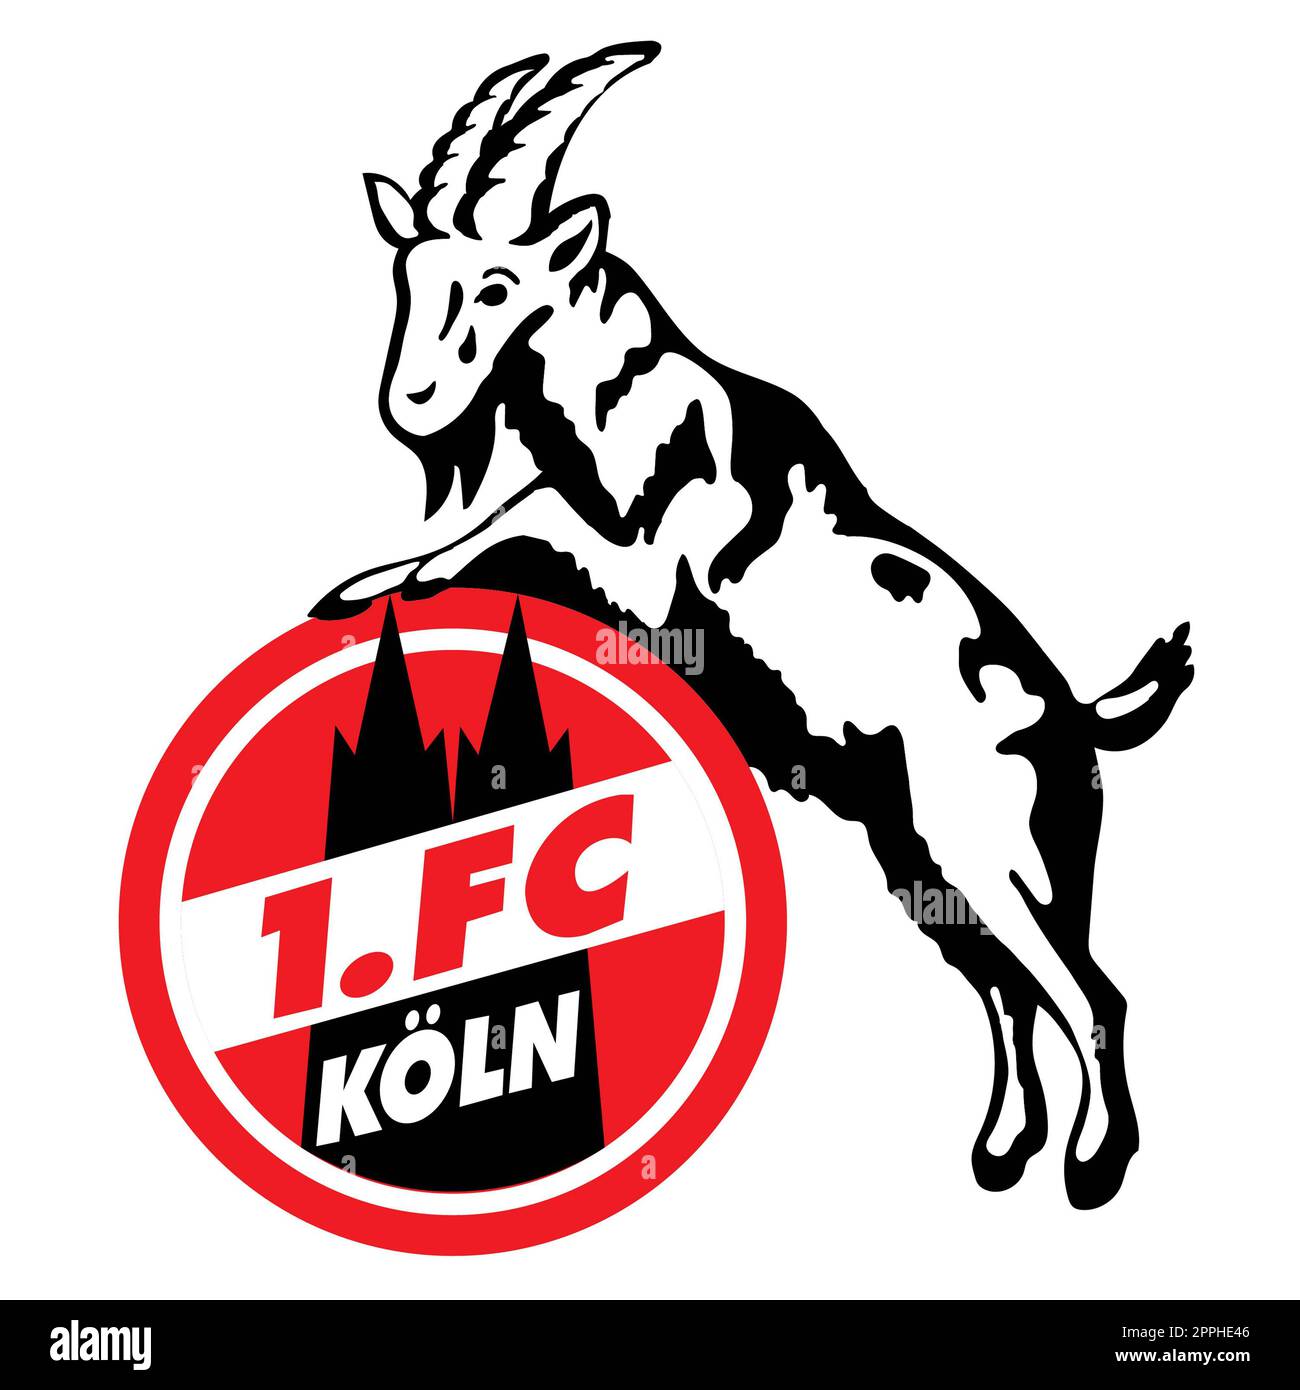 Francoforte sul meno, Germania - 10.23.2022 Logo della squadra di calcio tedesca Colonia. Immagine vettoriale. Foto Stock